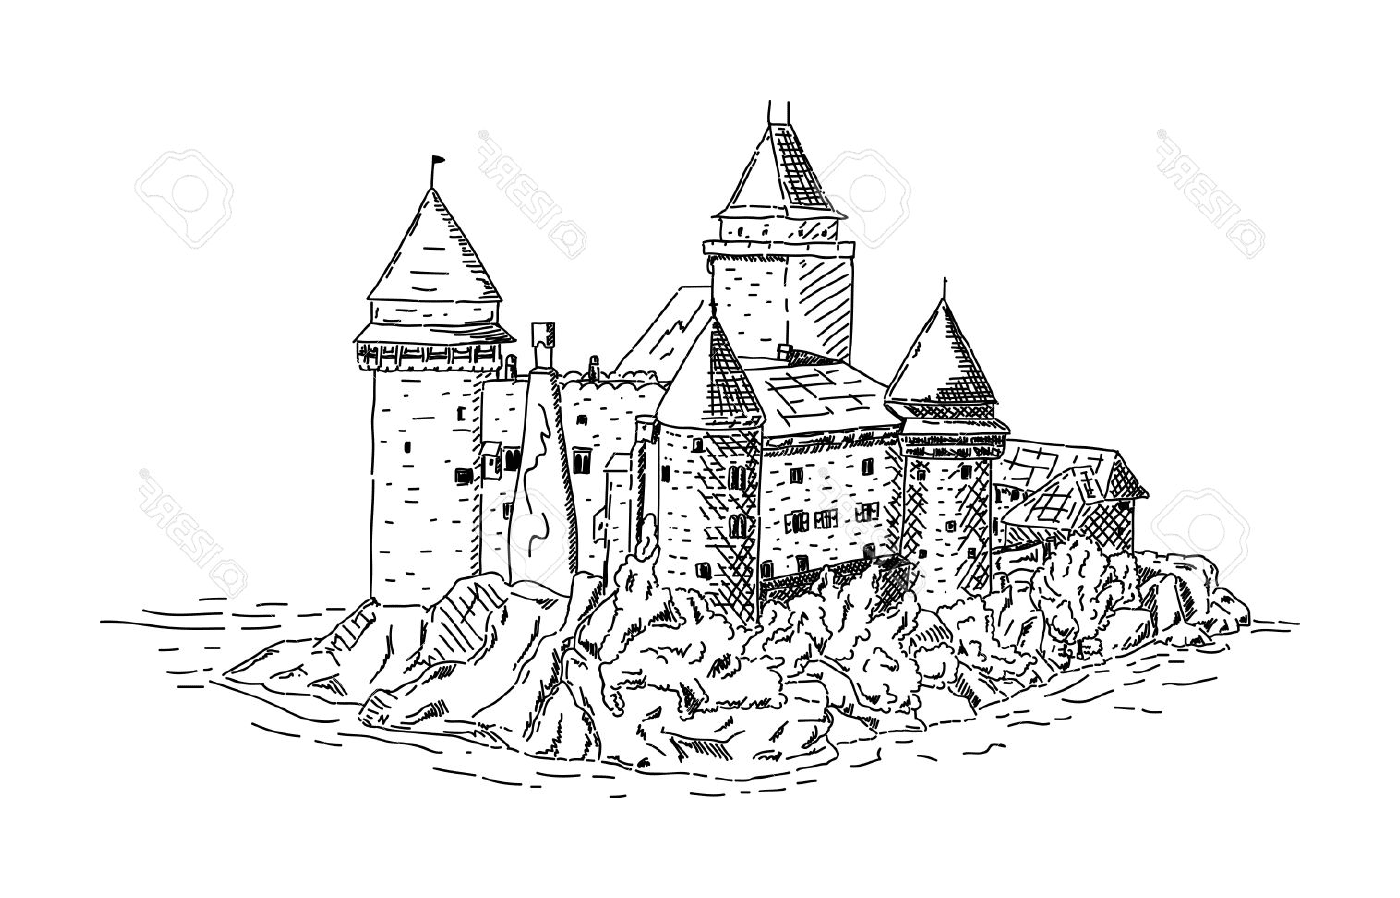  Um castelo medieval perto do mar 